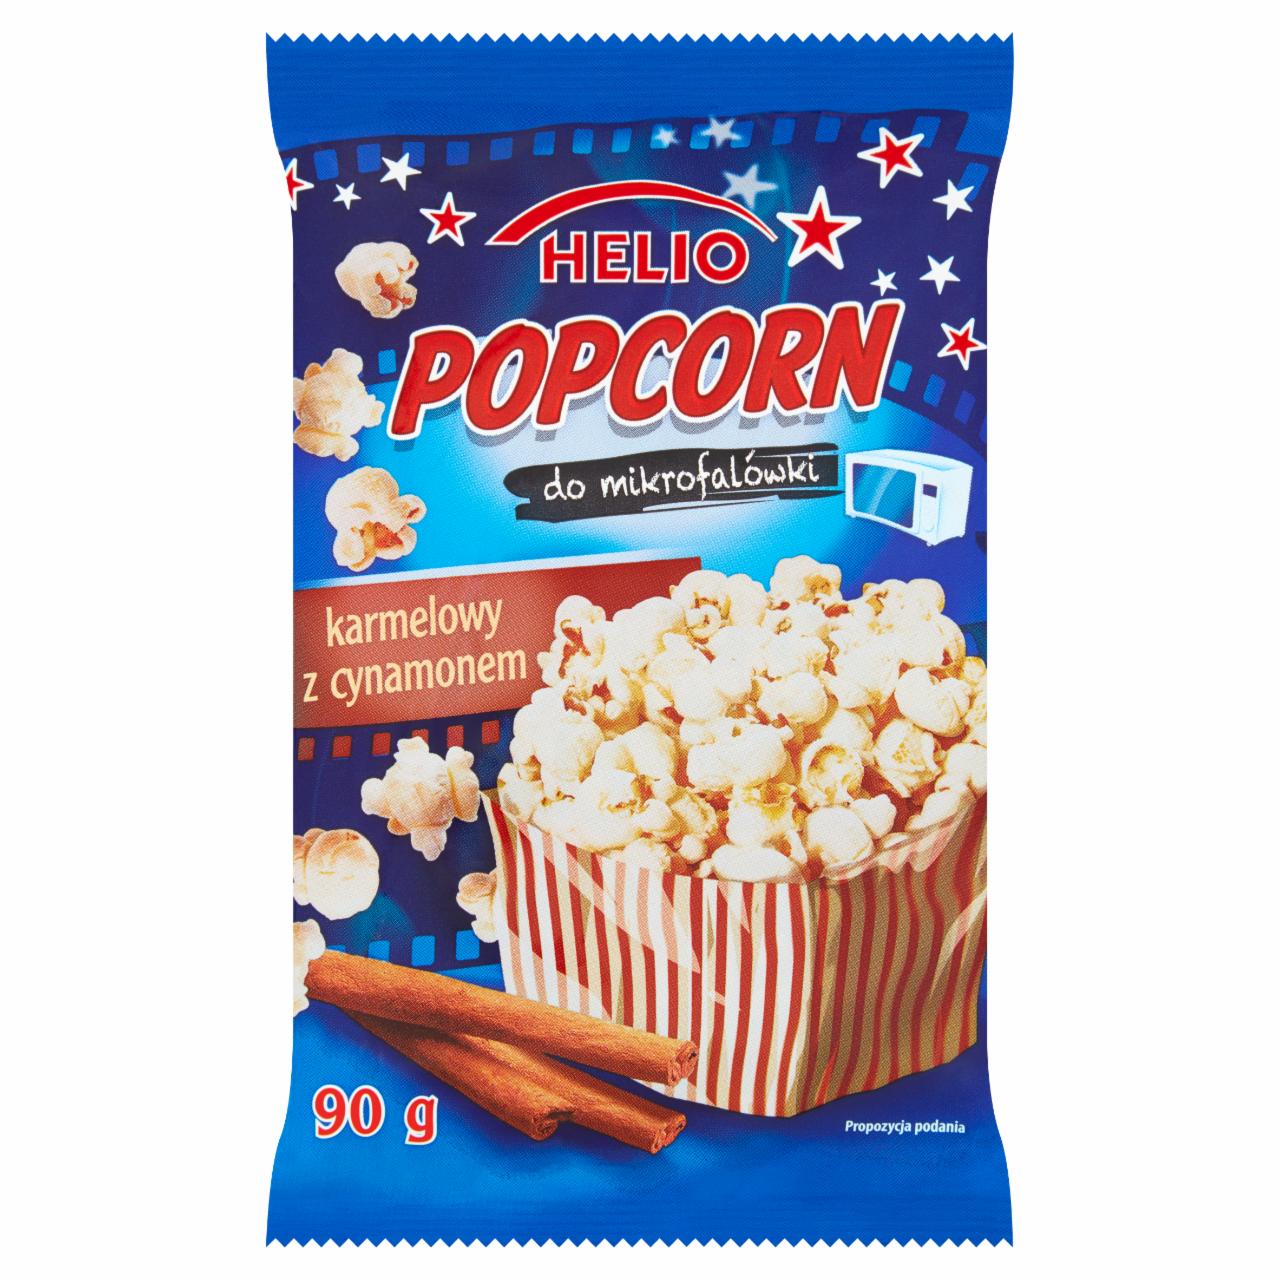 Zdjęcia - Helio Popcorn karmelowy z cynamonem do mikrofalówki 90 g